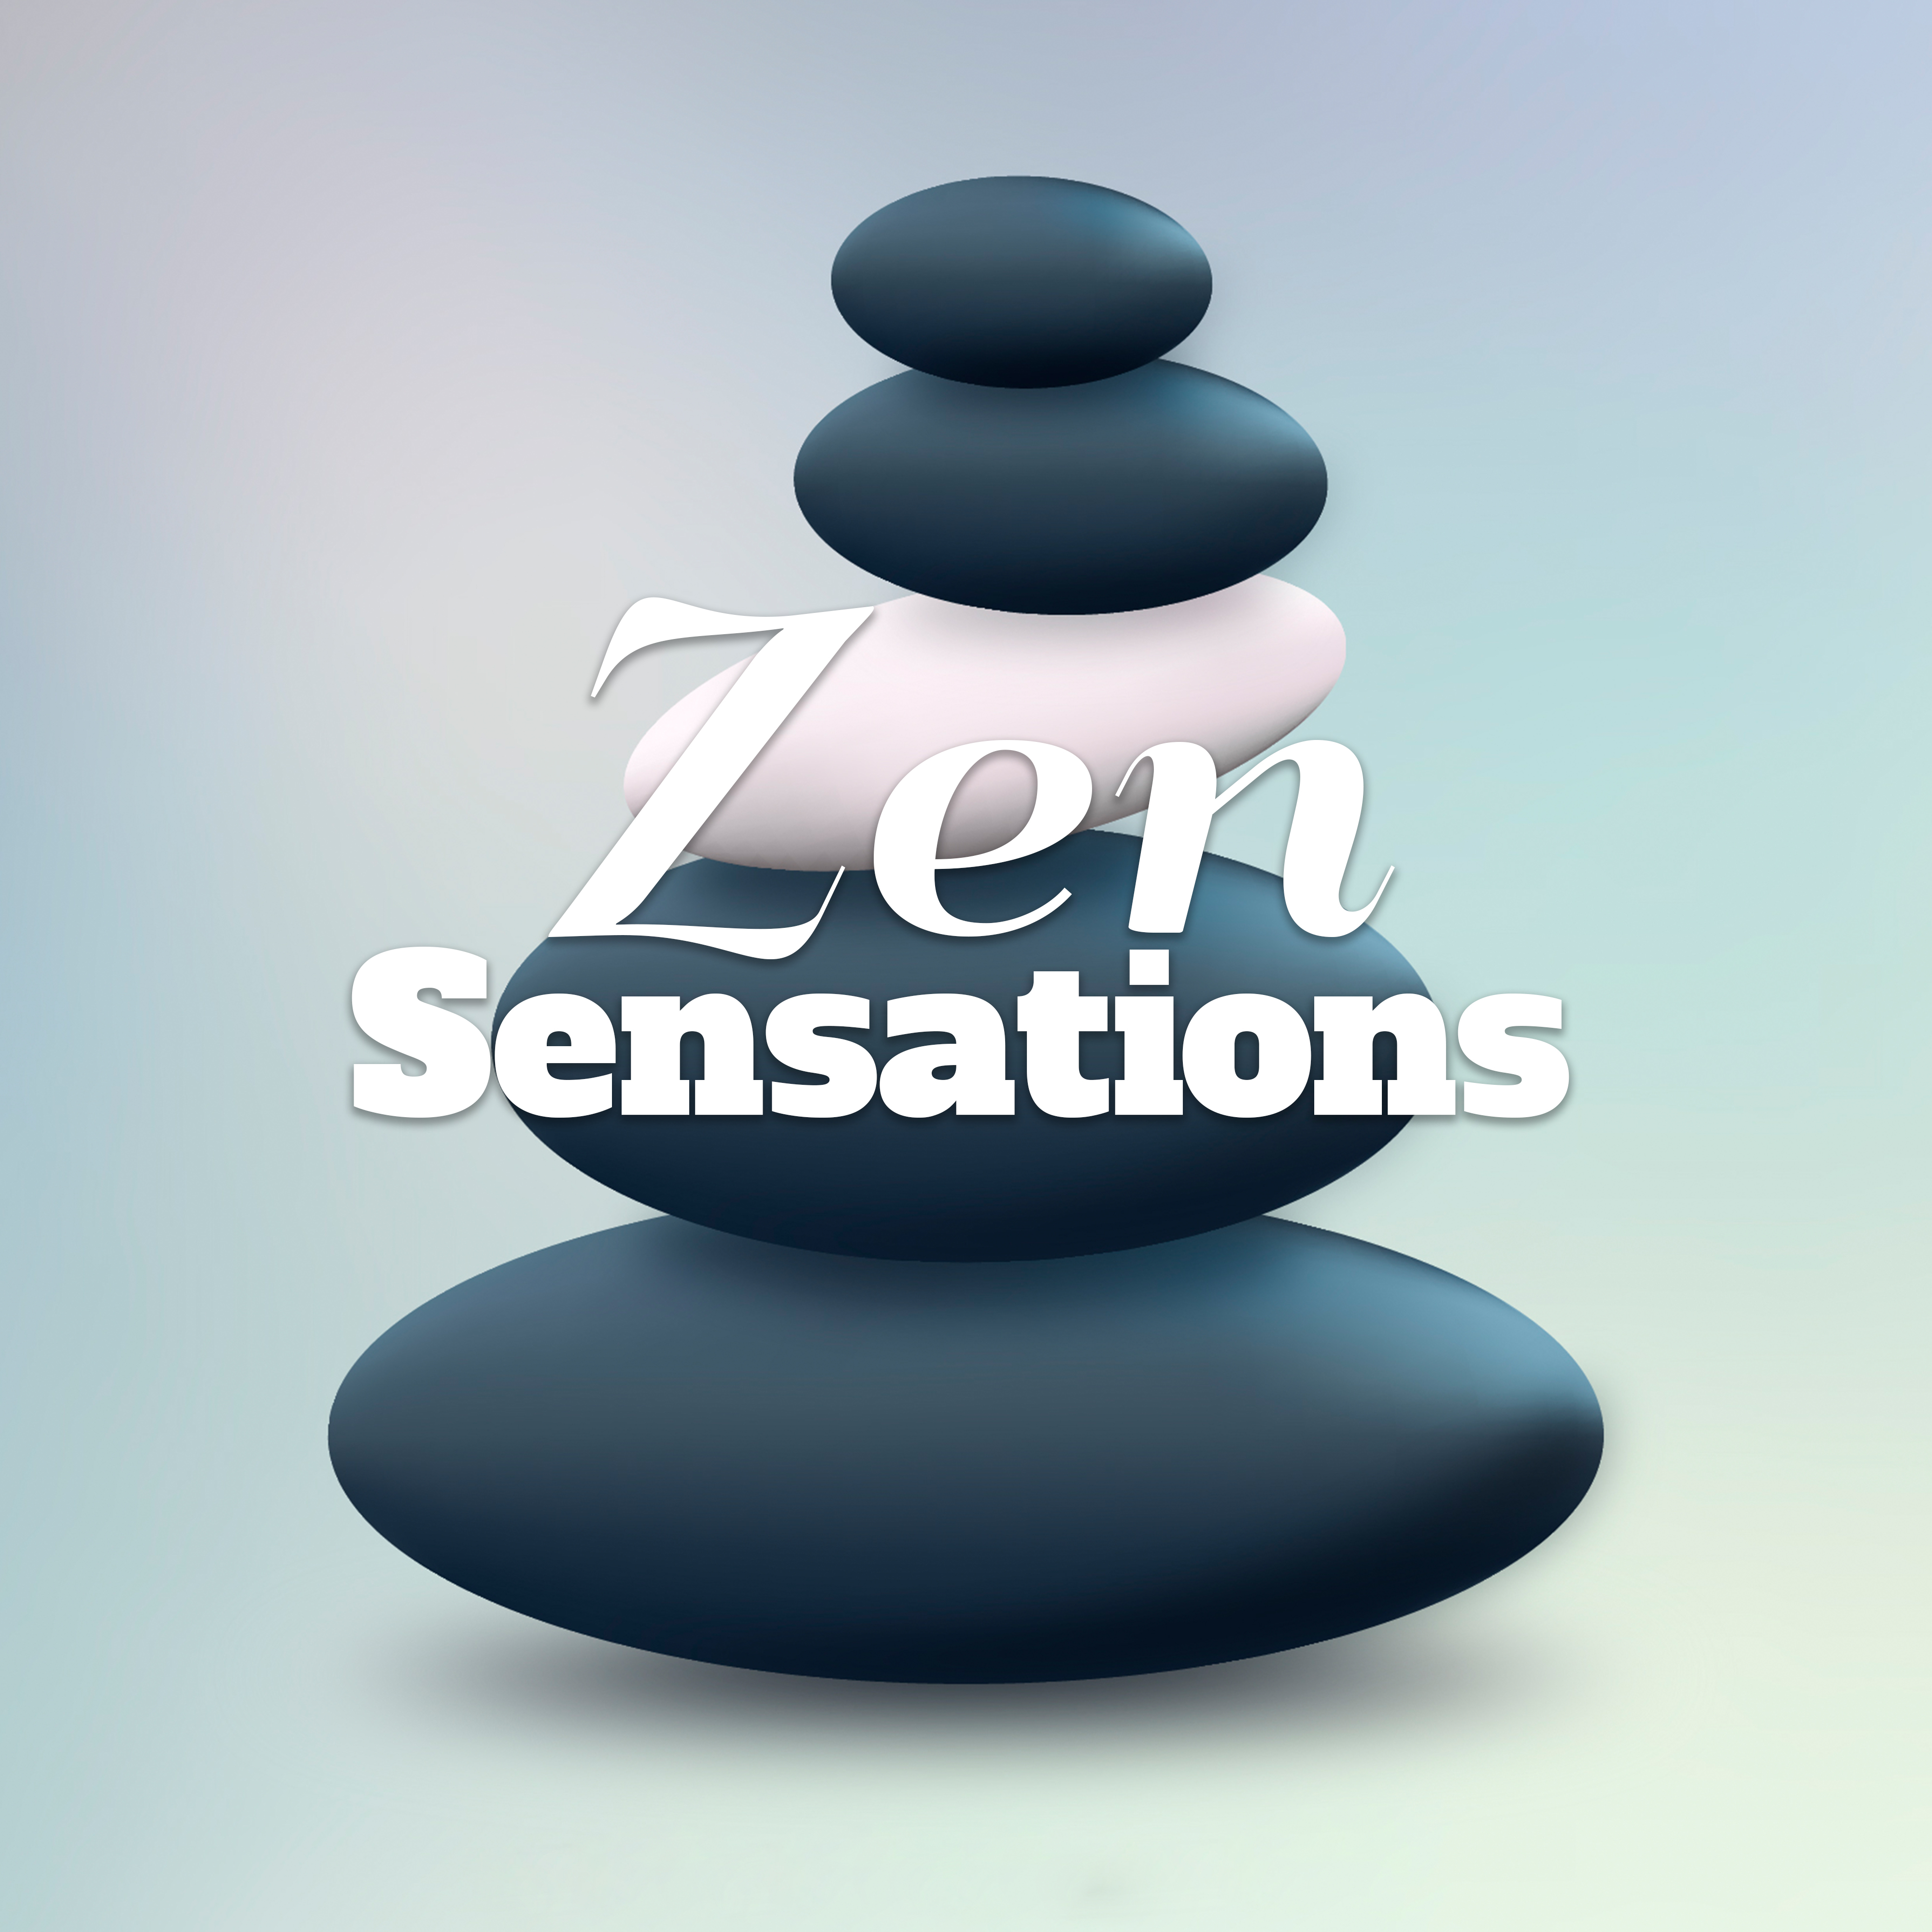 Zen Sensations